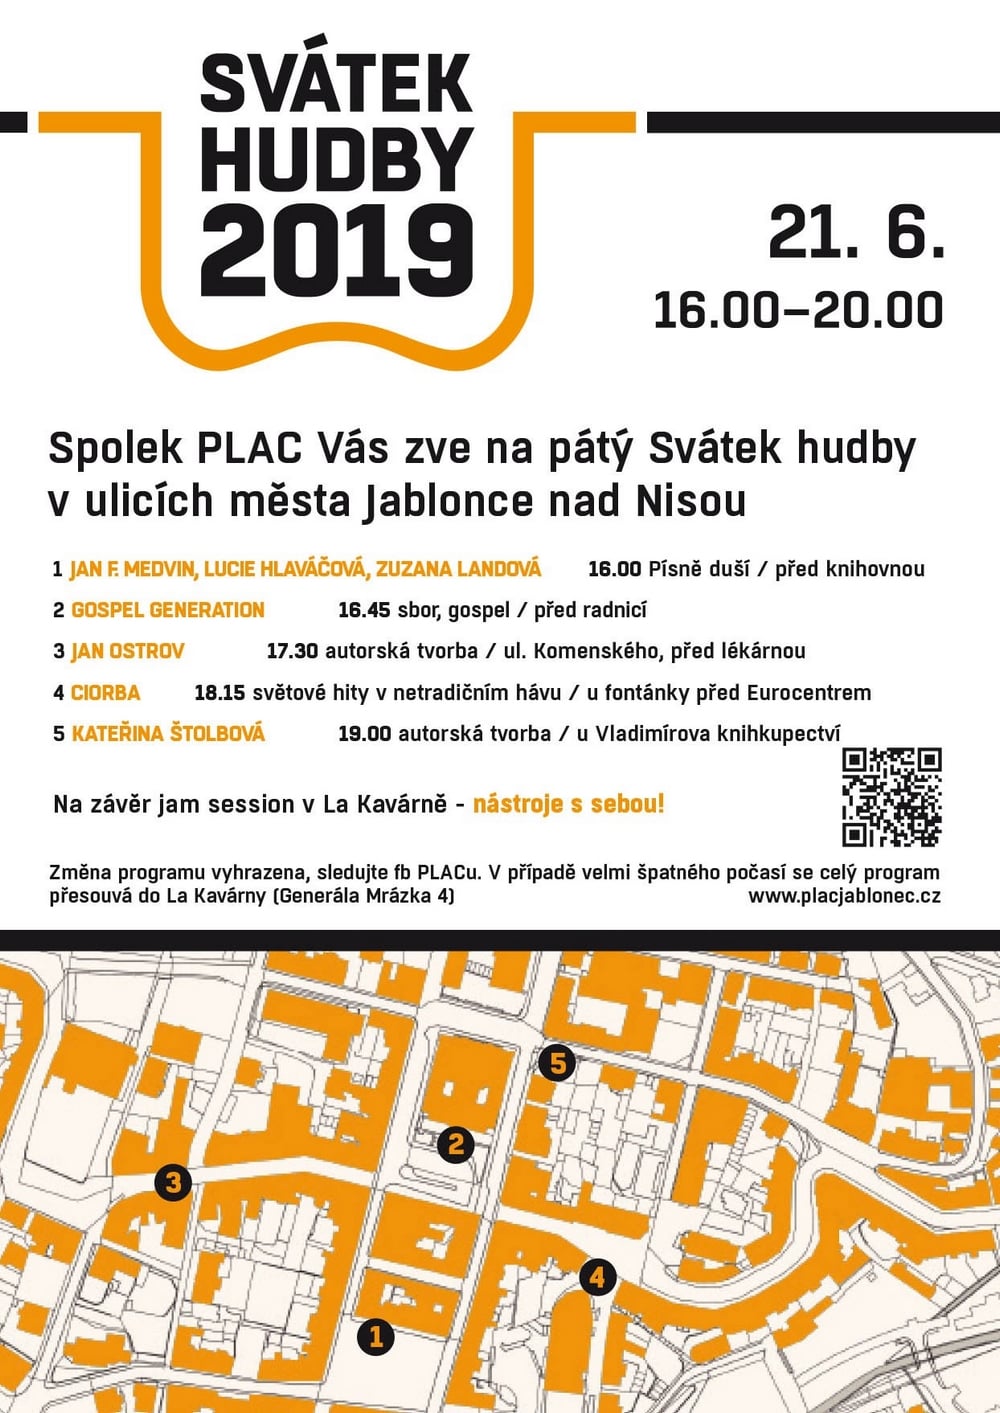 Svátek hudby 2019 | Pouliční hraní v Jablonci nad Nisou 21.6.2019